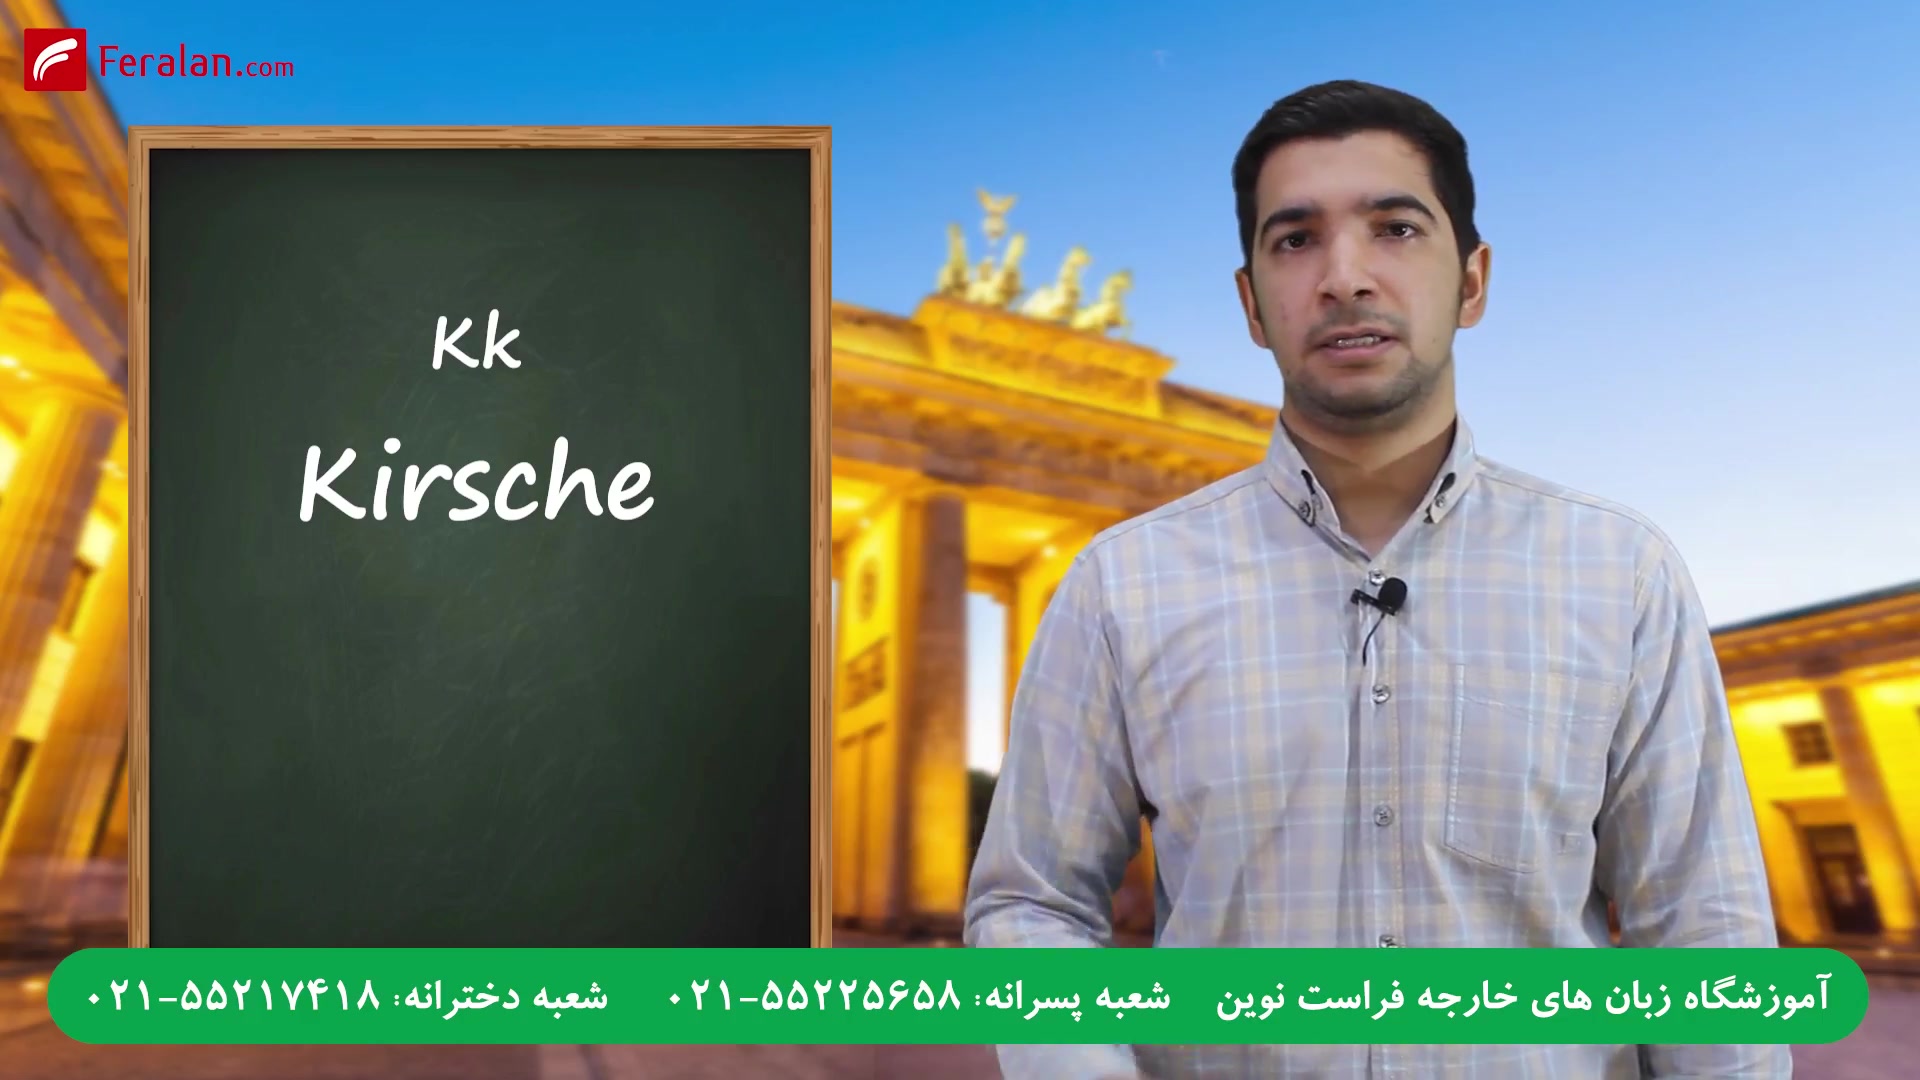 آموزش الفبای آلمانی با تلفظ و مثال